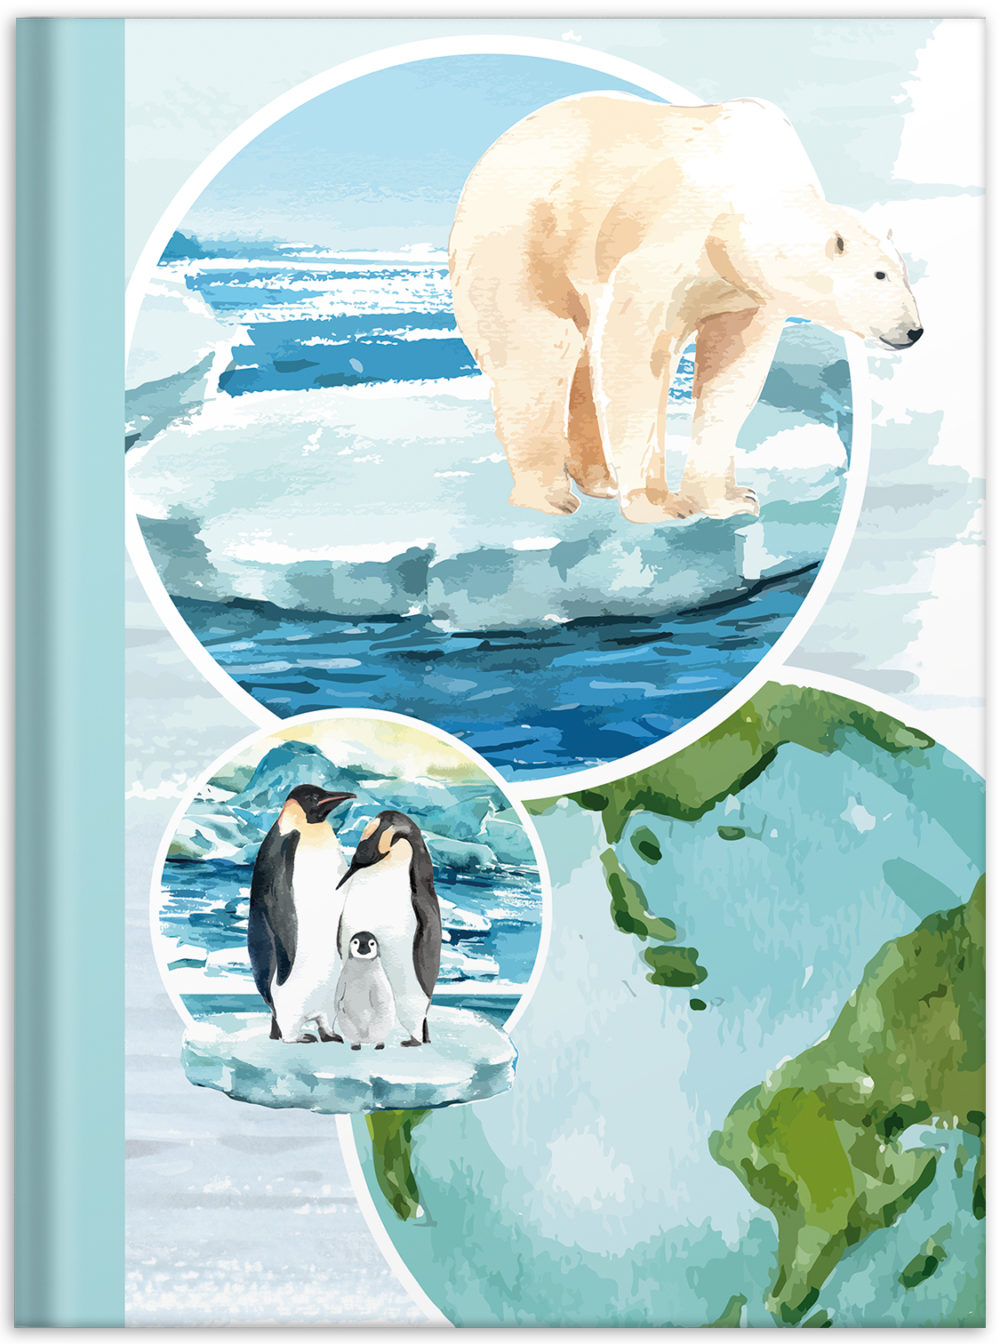 Notizbuch "Planet" Vorderseite mit Eisbären und Pinguinen